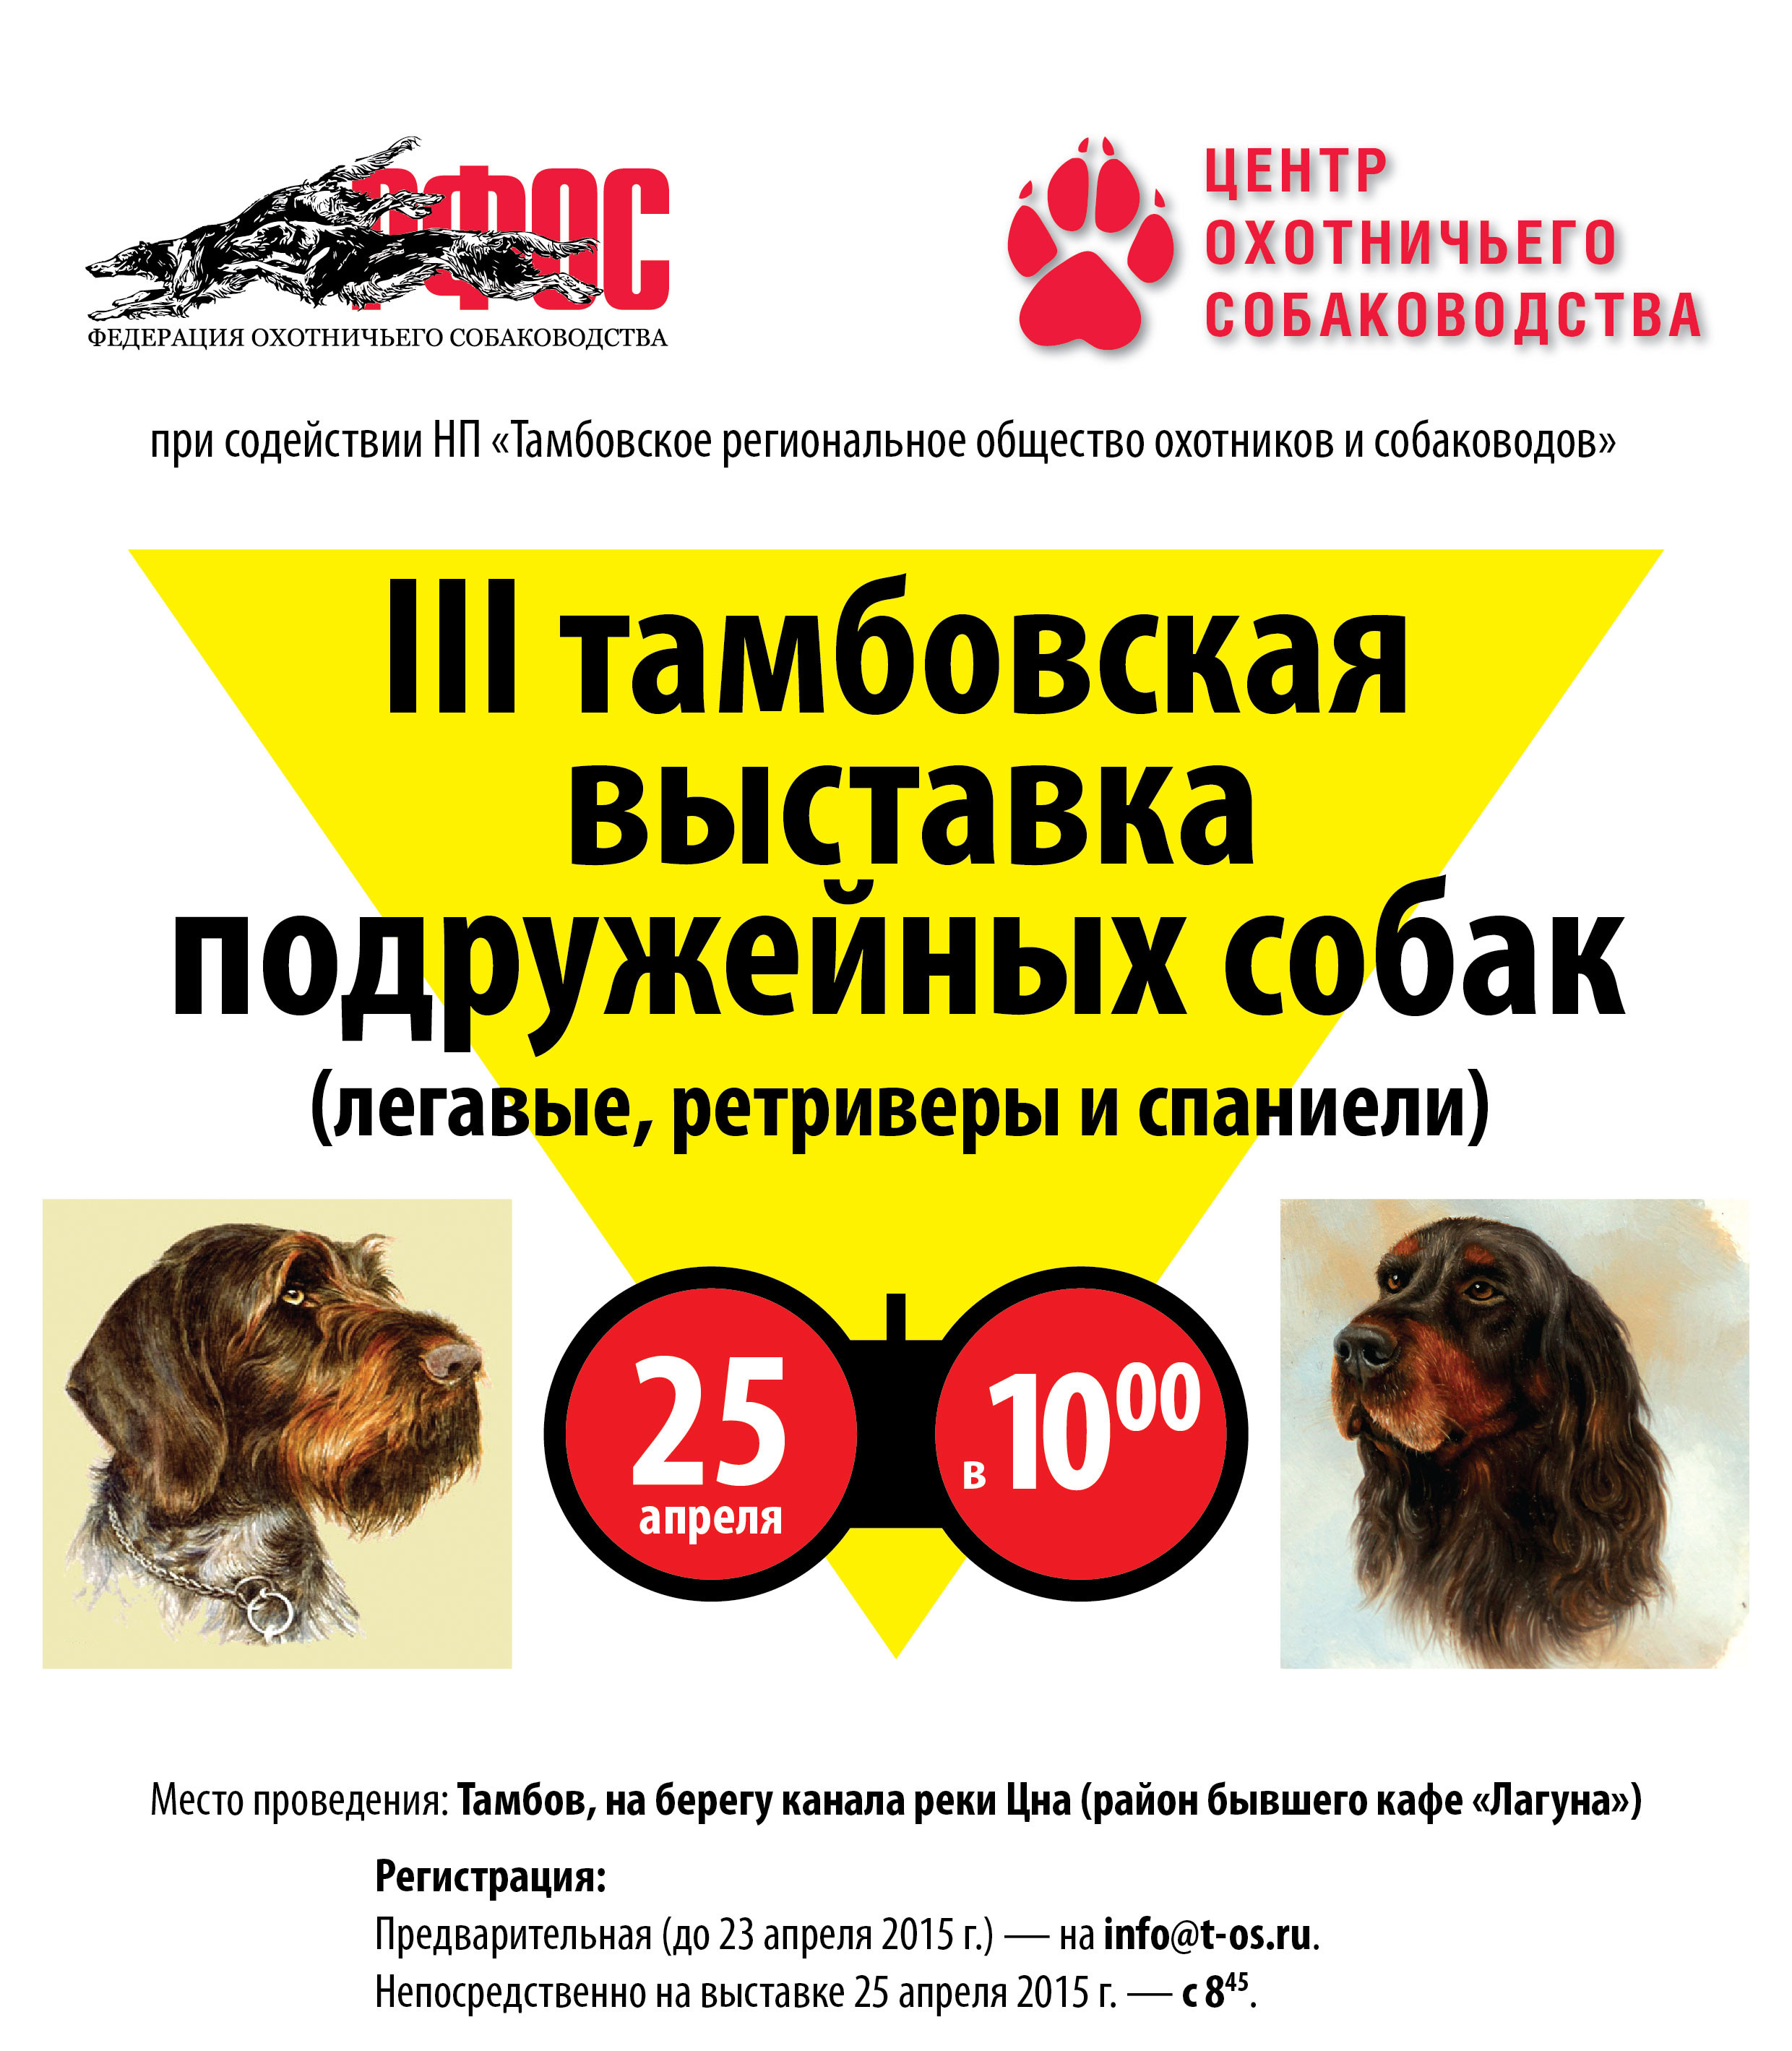 В Тамбове пройдет выставка подружейных собак